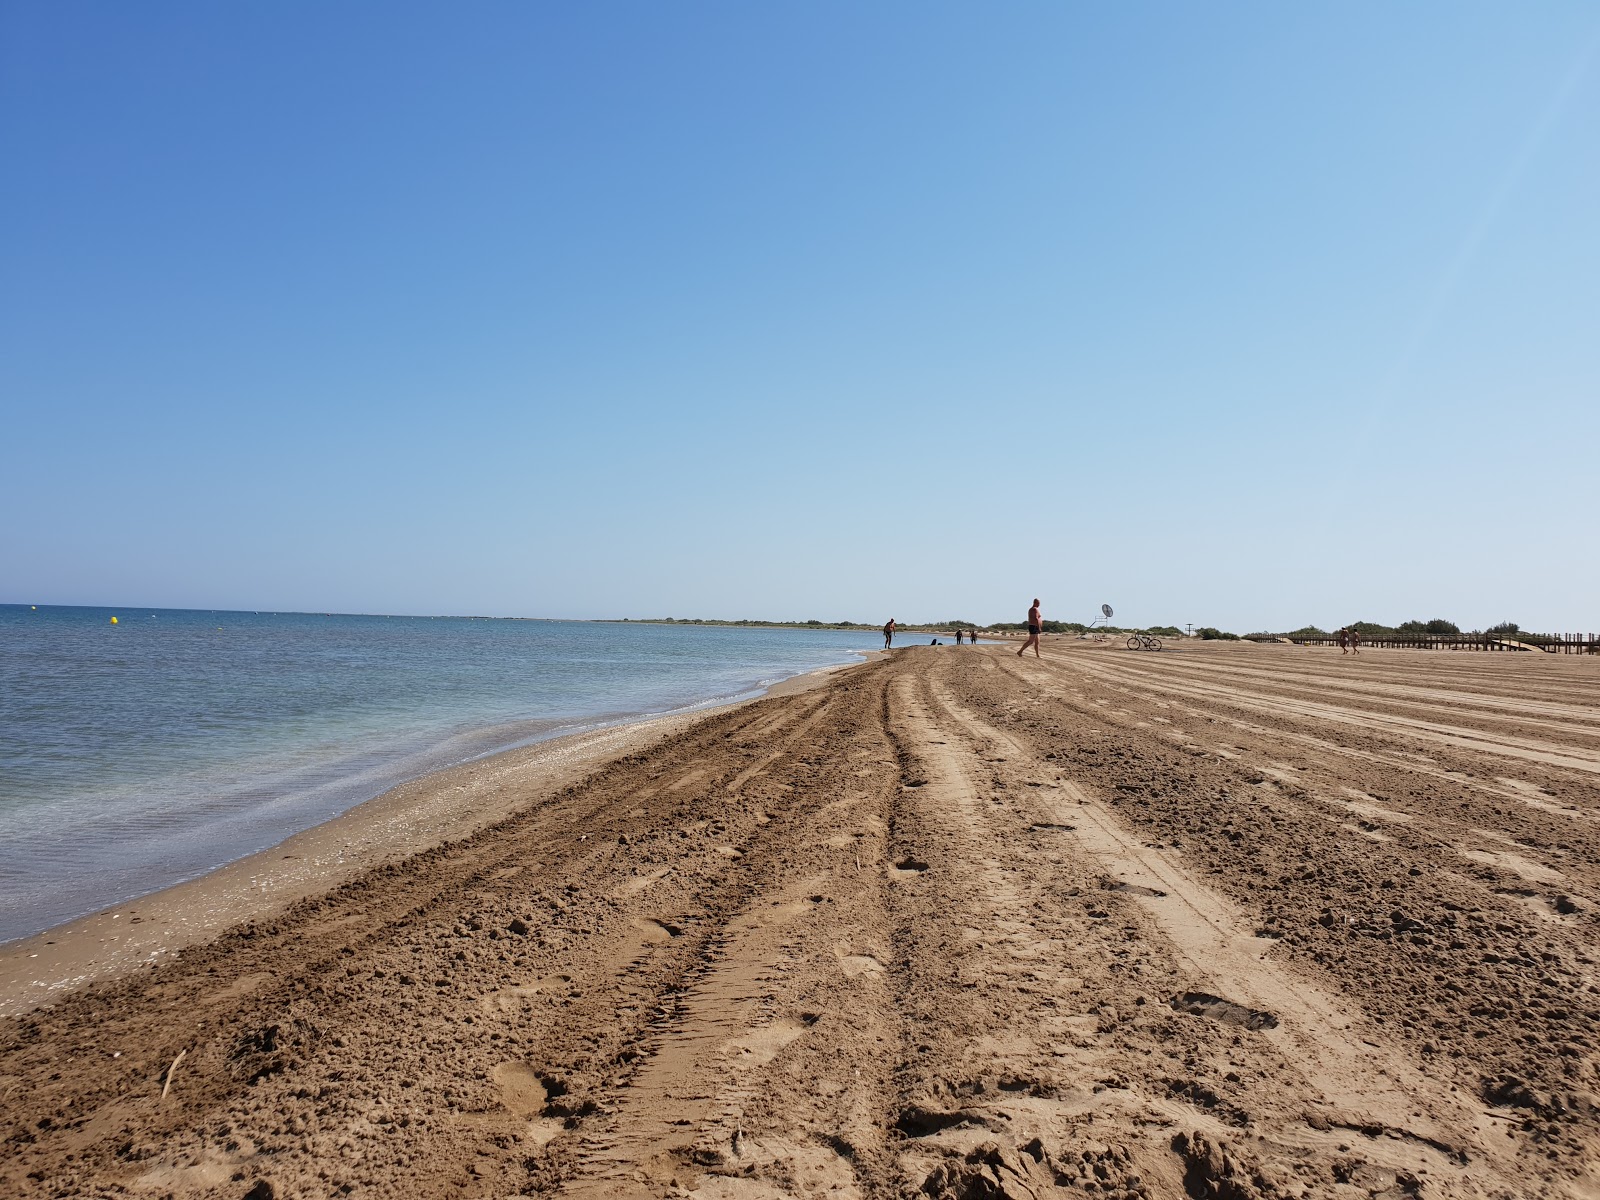 Riumar Plajı'in fotoğrafı çok temiz temizlik seviyesi ile